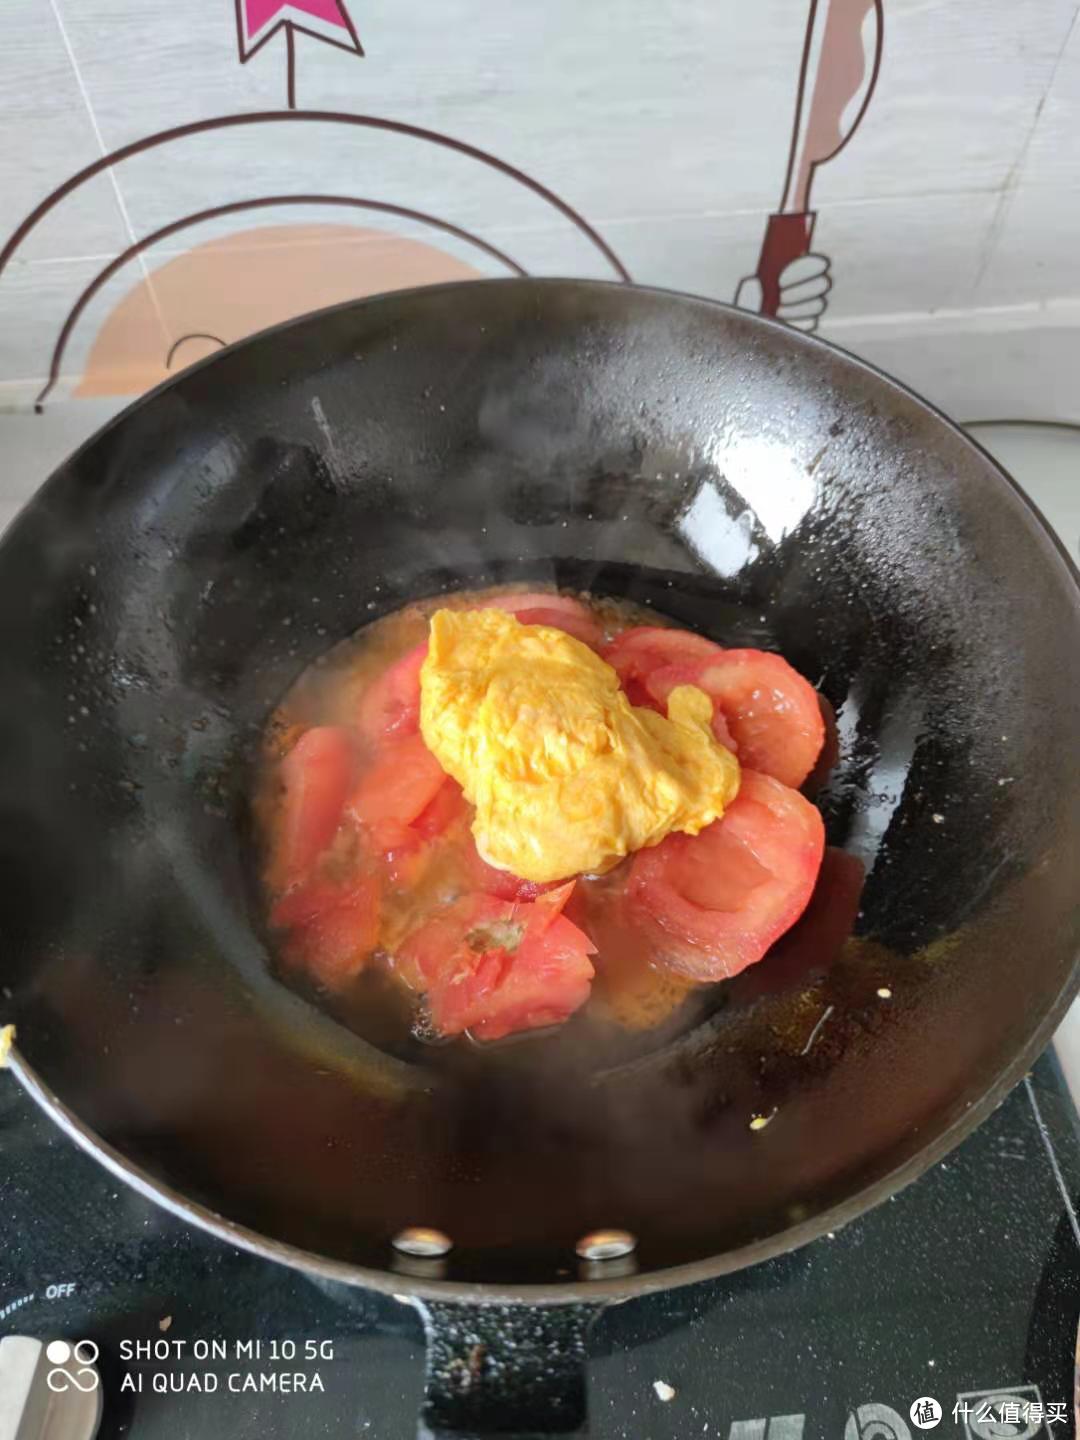 打开锅盖的瞬间鸡蛋会像蒸馒头一样瘪下去